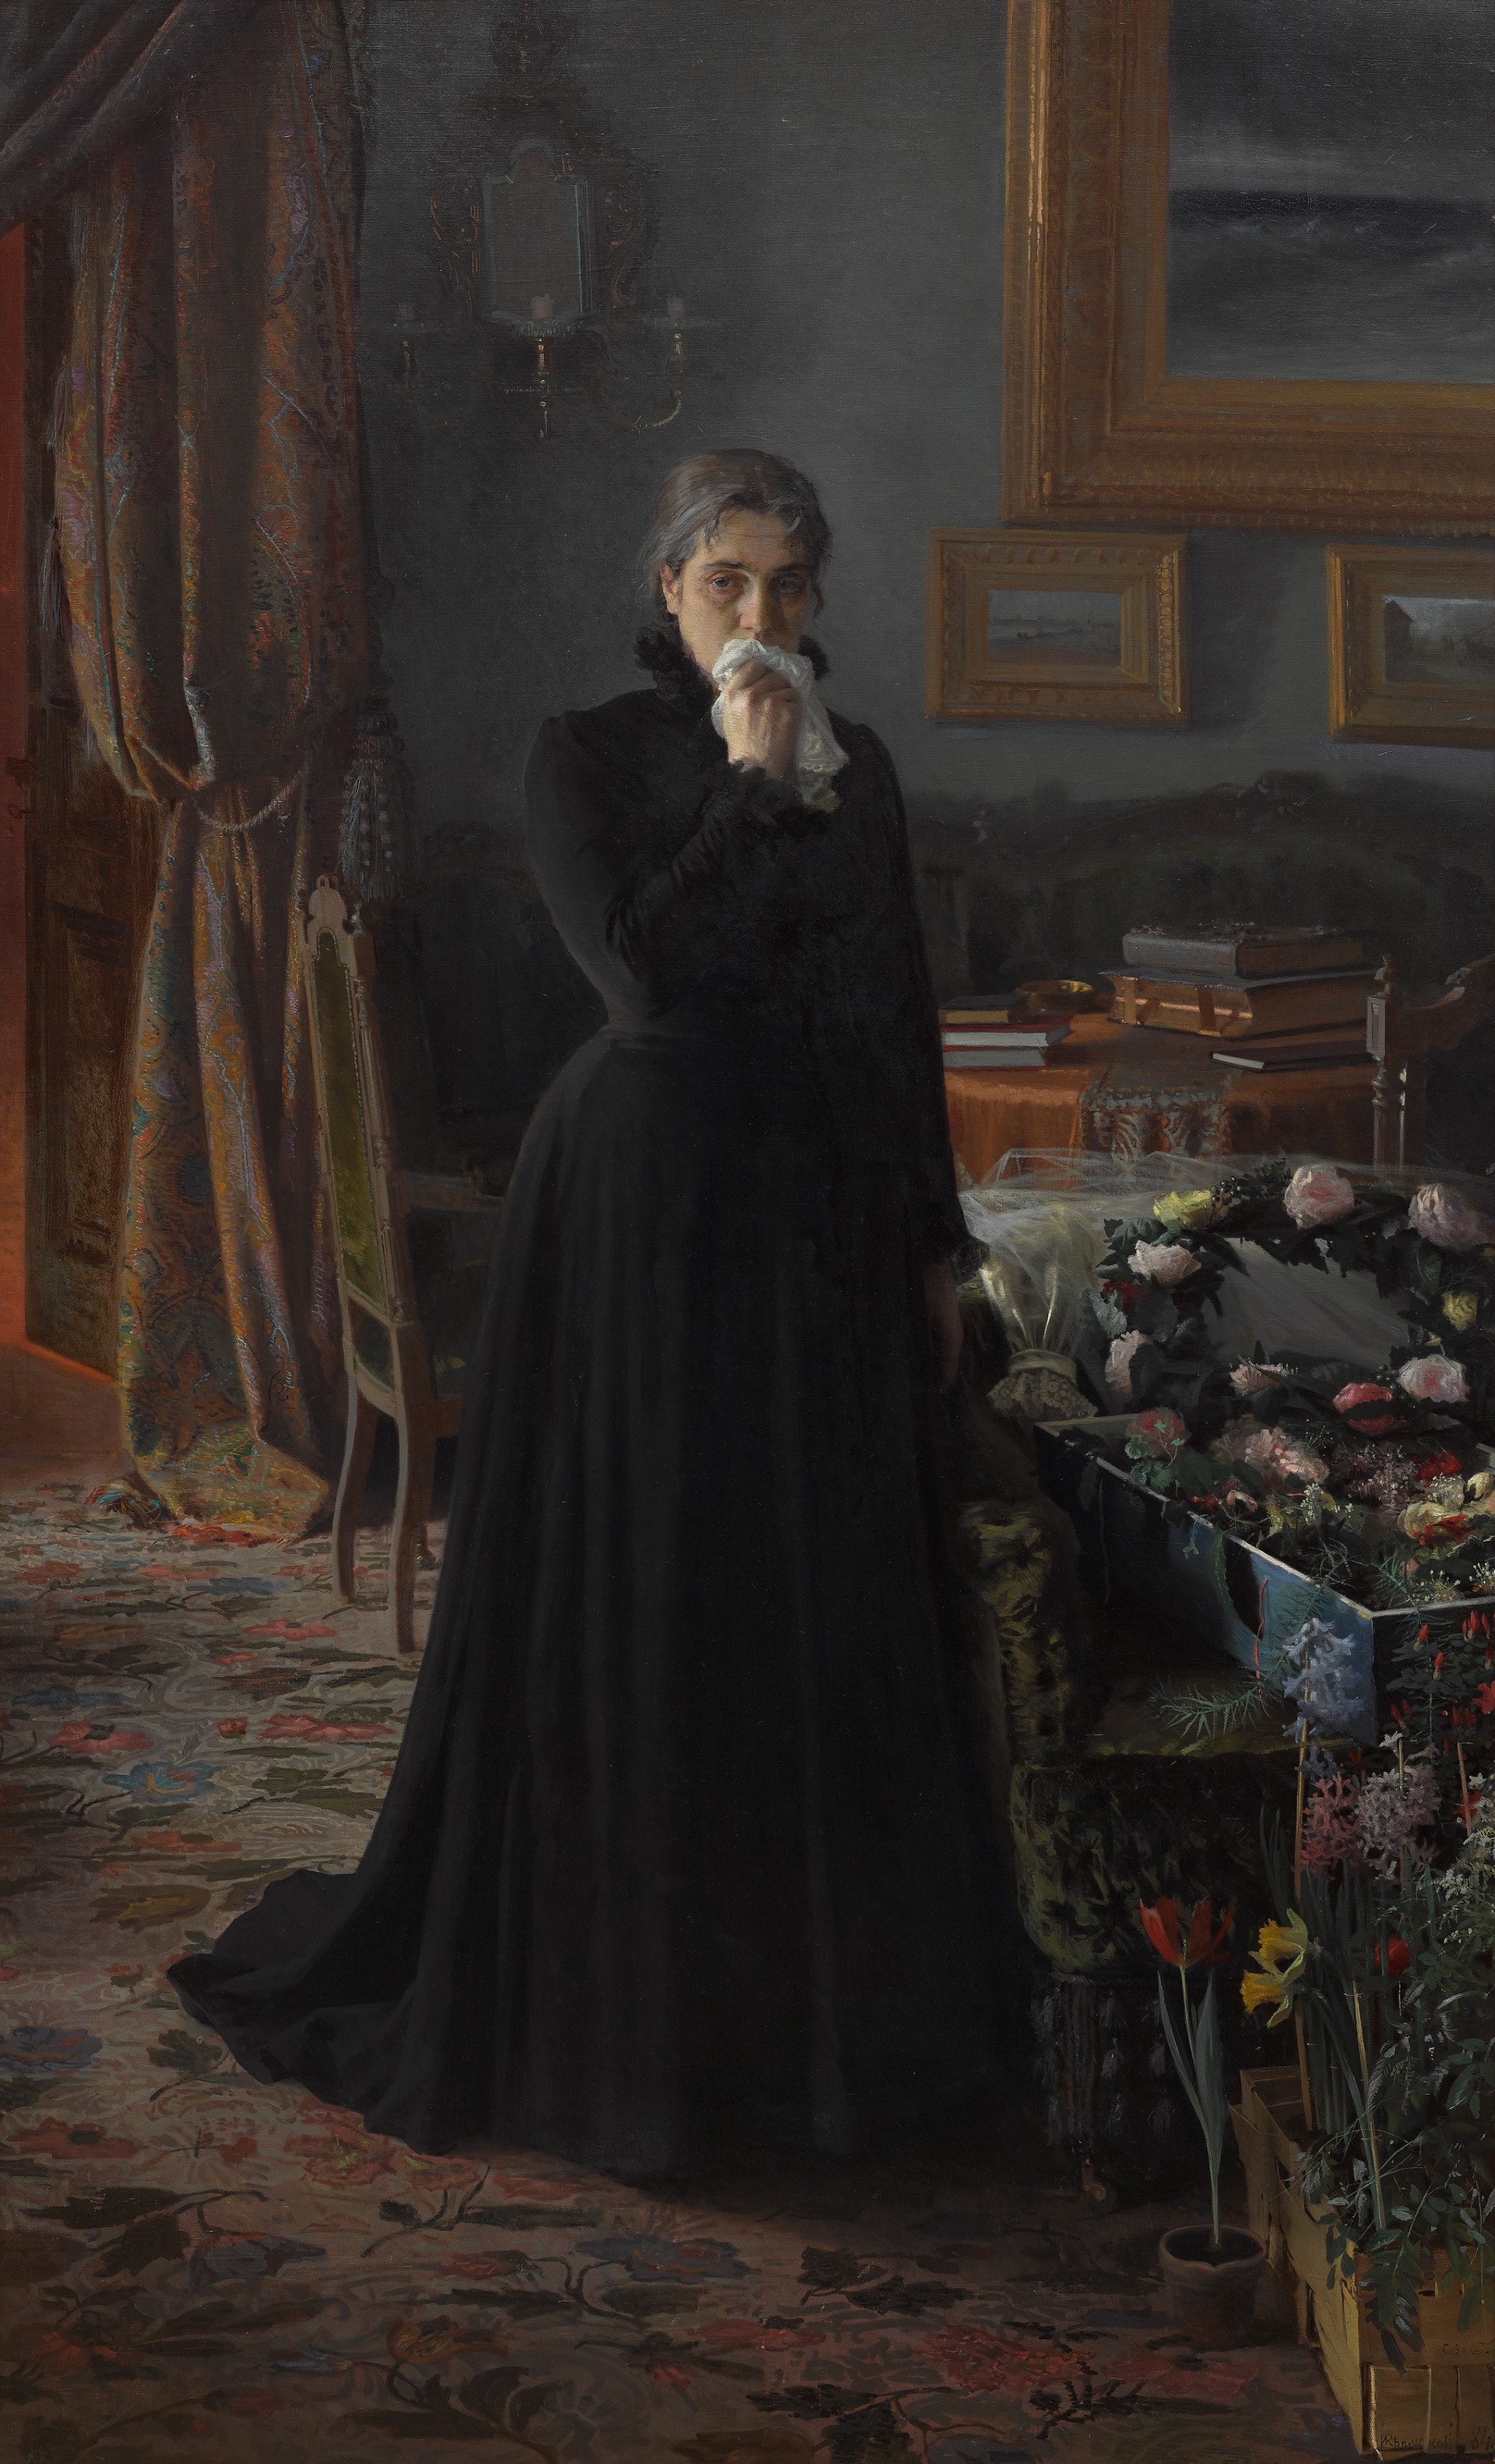 “Dolore inconsolabile”, Ivan Kramskoj, 1884